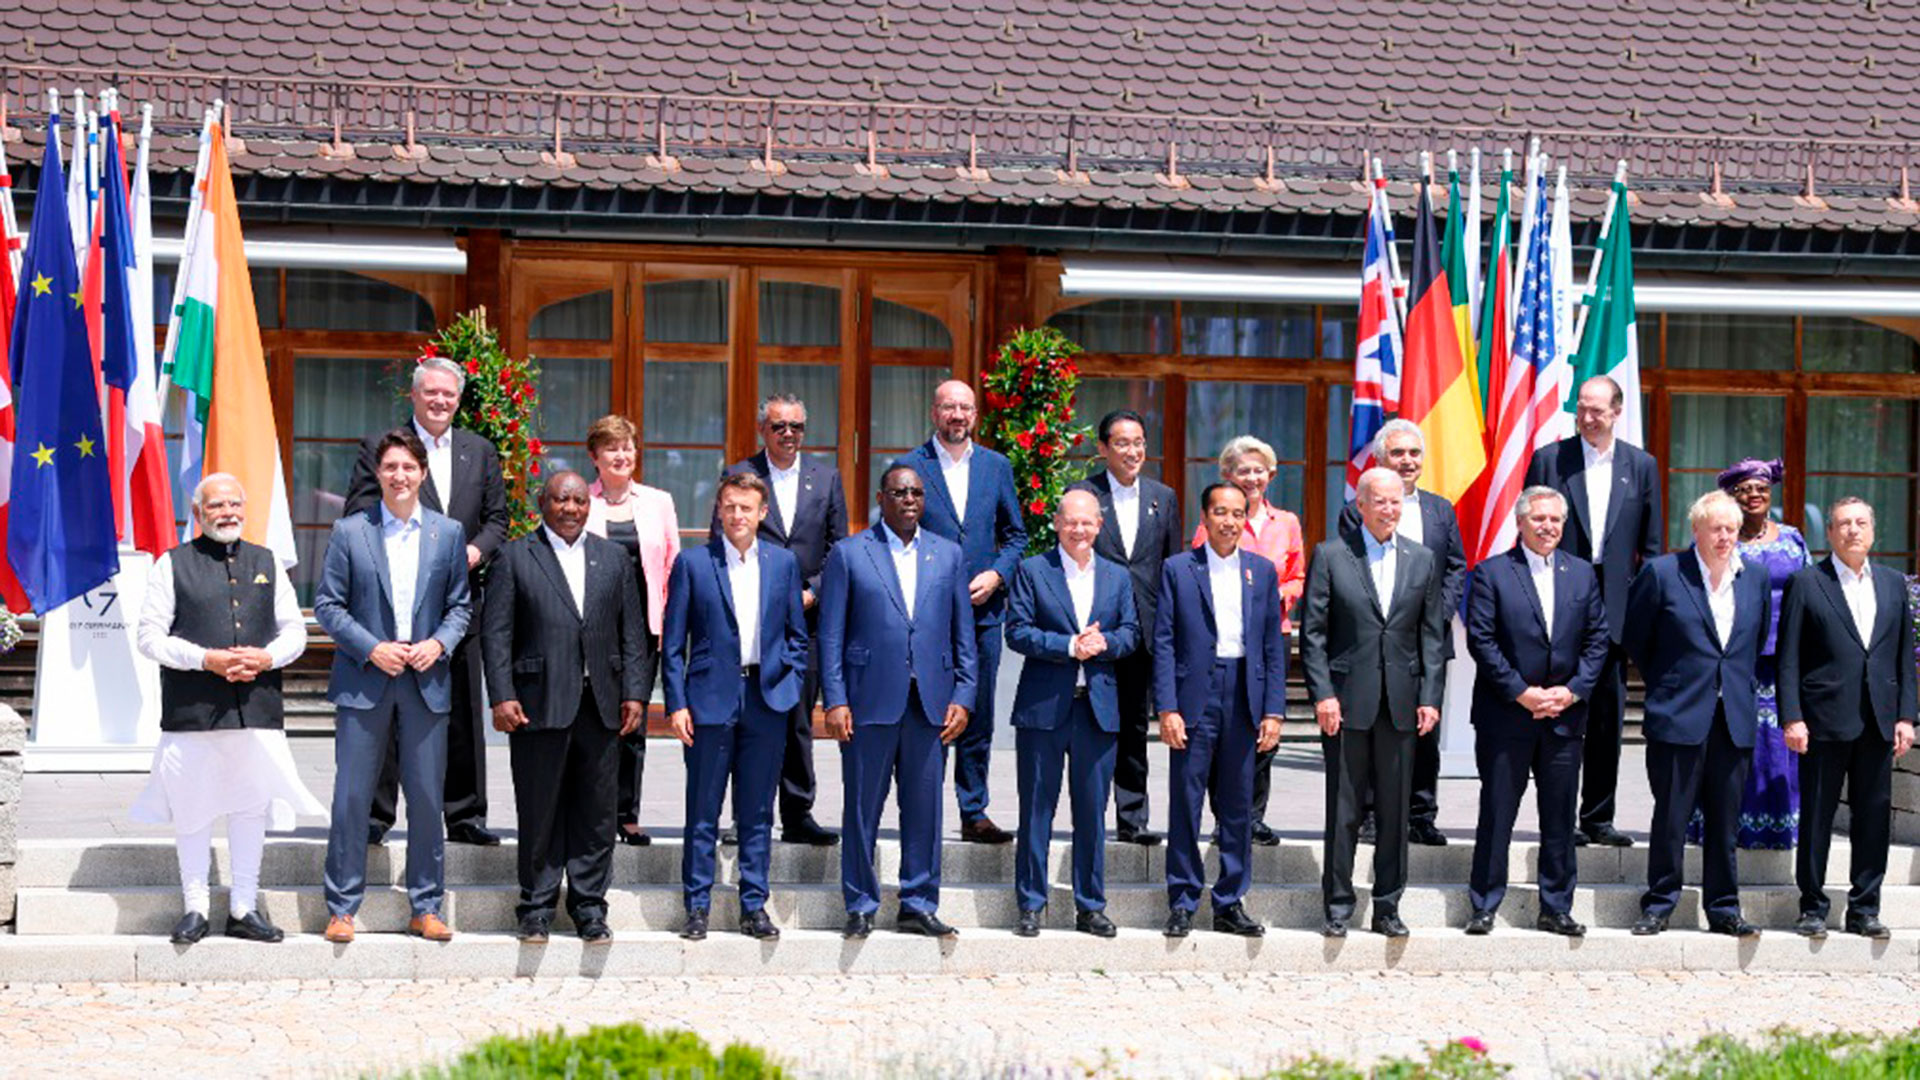 La foto de familia de los principales líderes mundiales que participan del G7